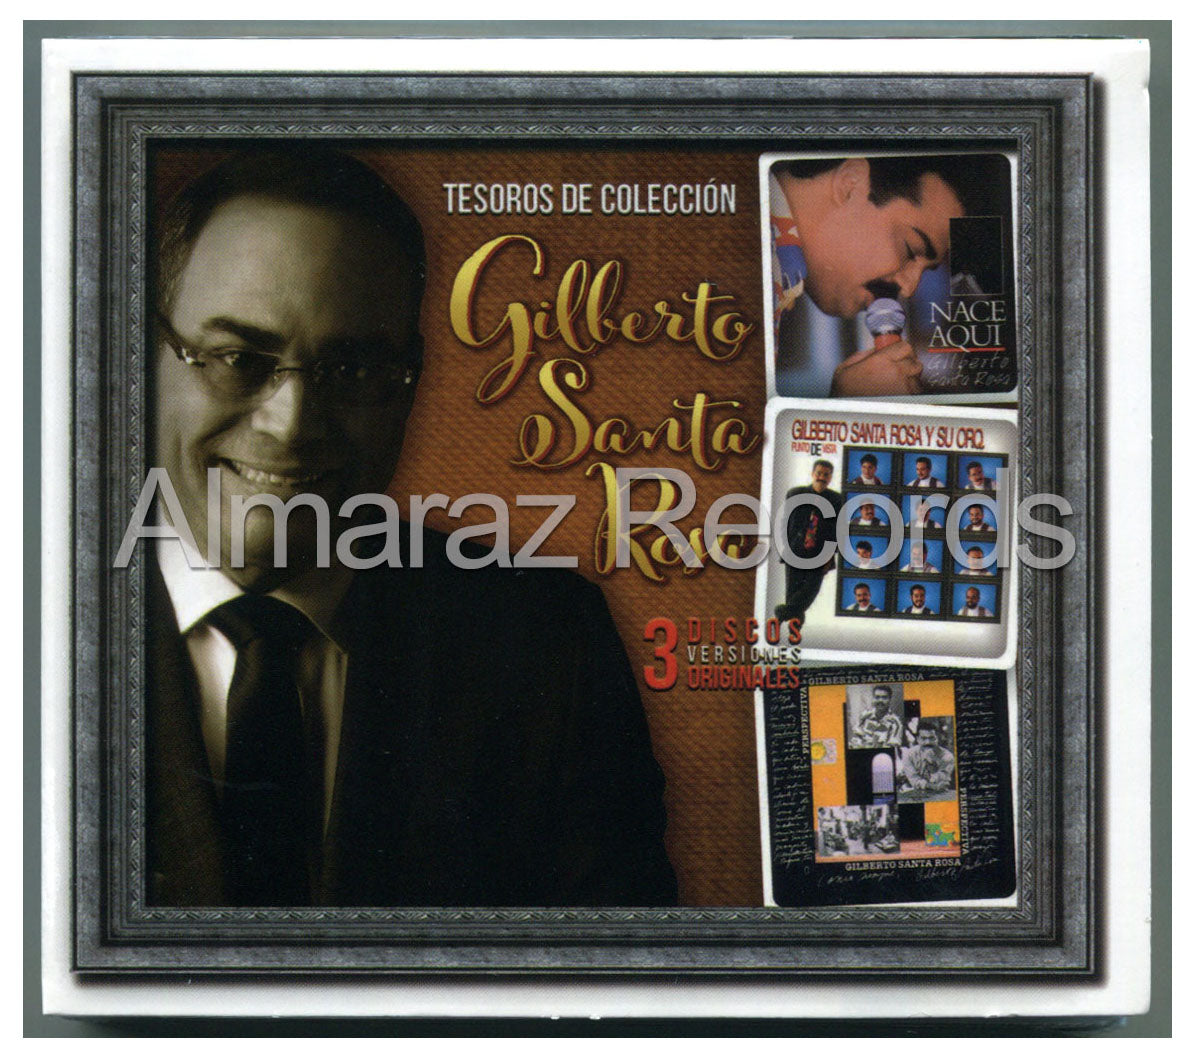 Gilberto Santa Rosa Tesoros De Coleccion 3CD